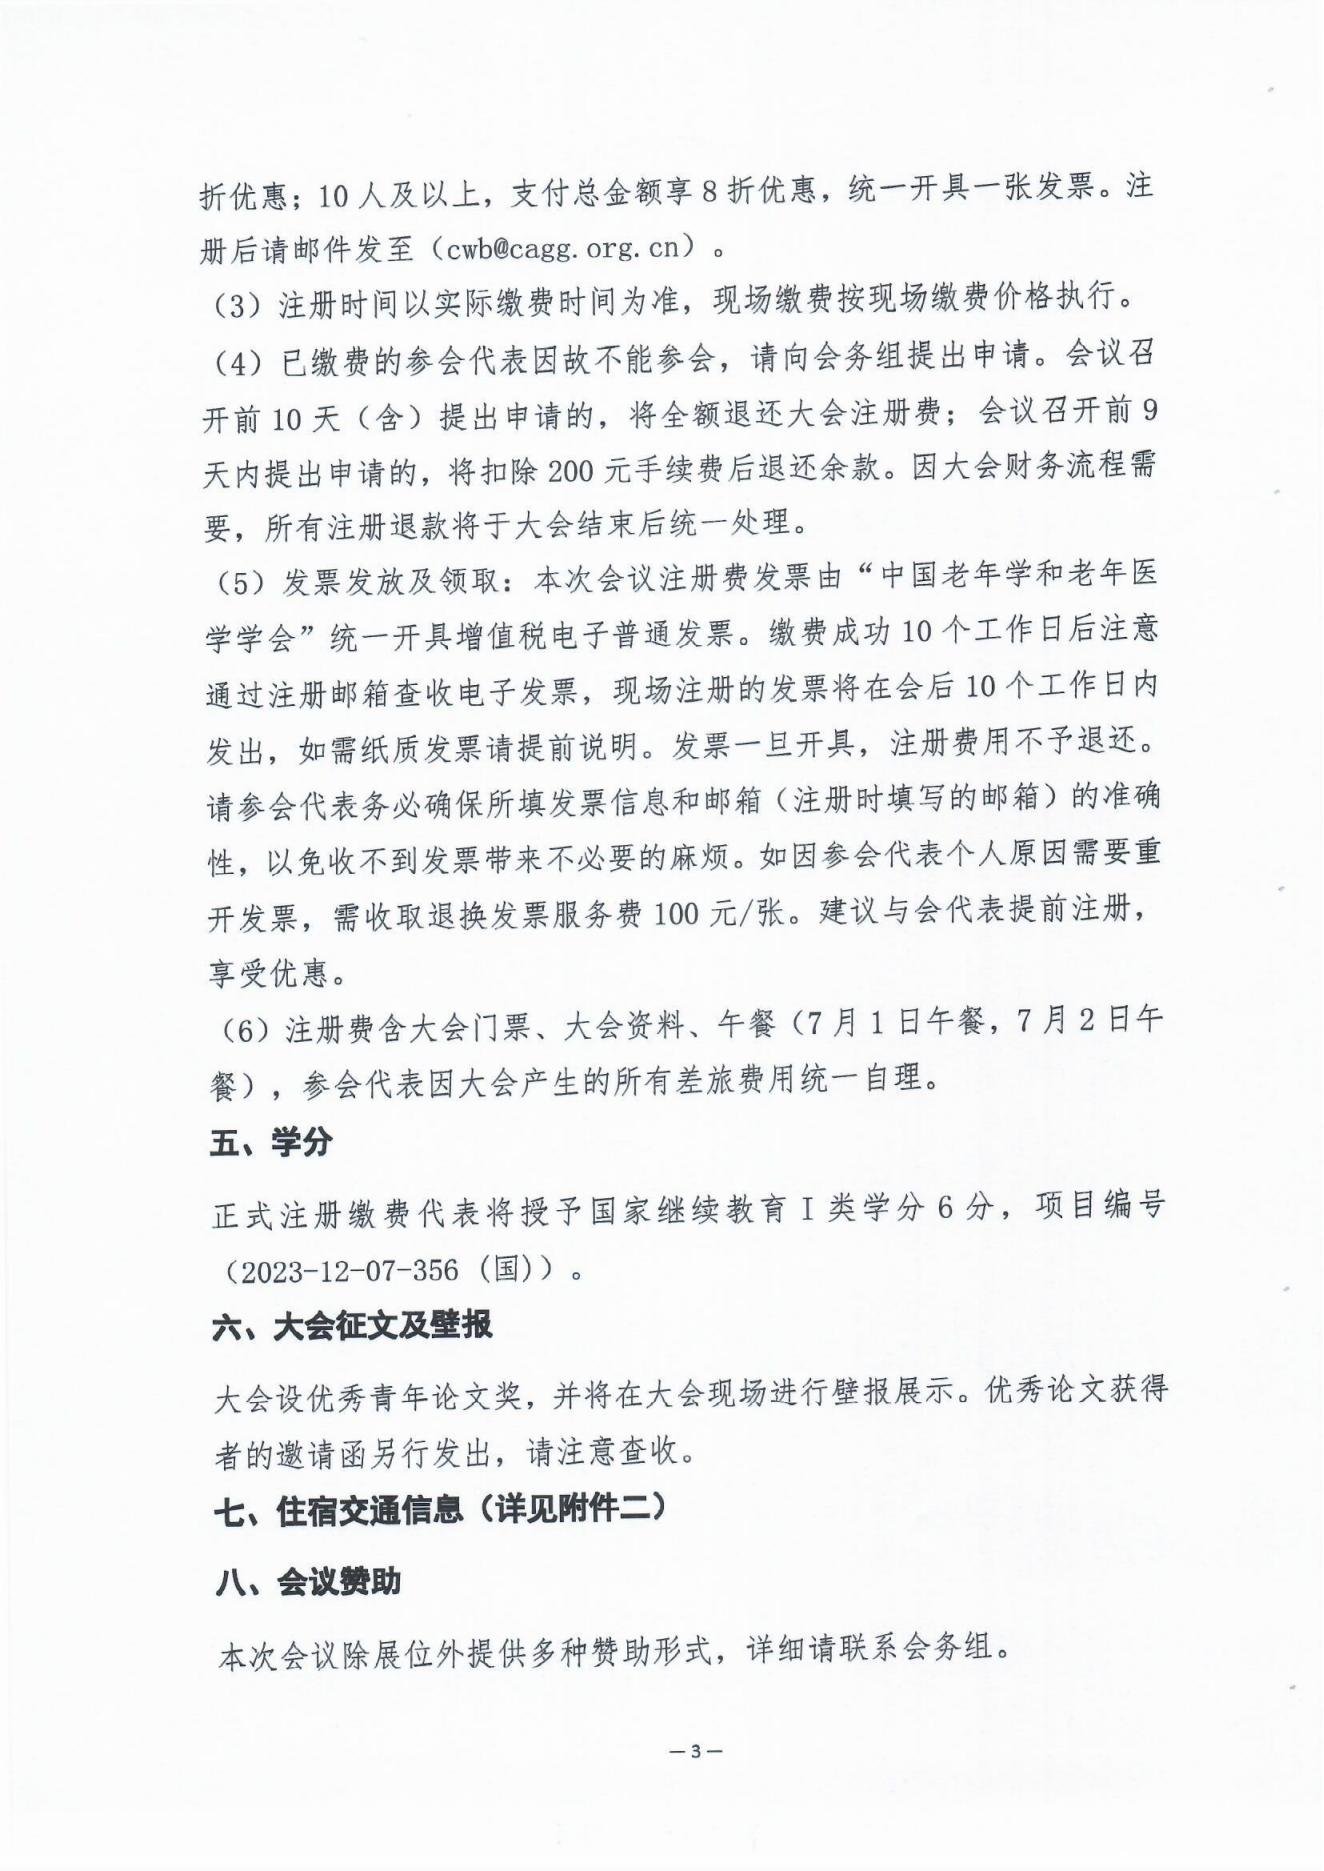 2023中国老年慢病大会会议通知（第二轮）0606(1)_02.jpg